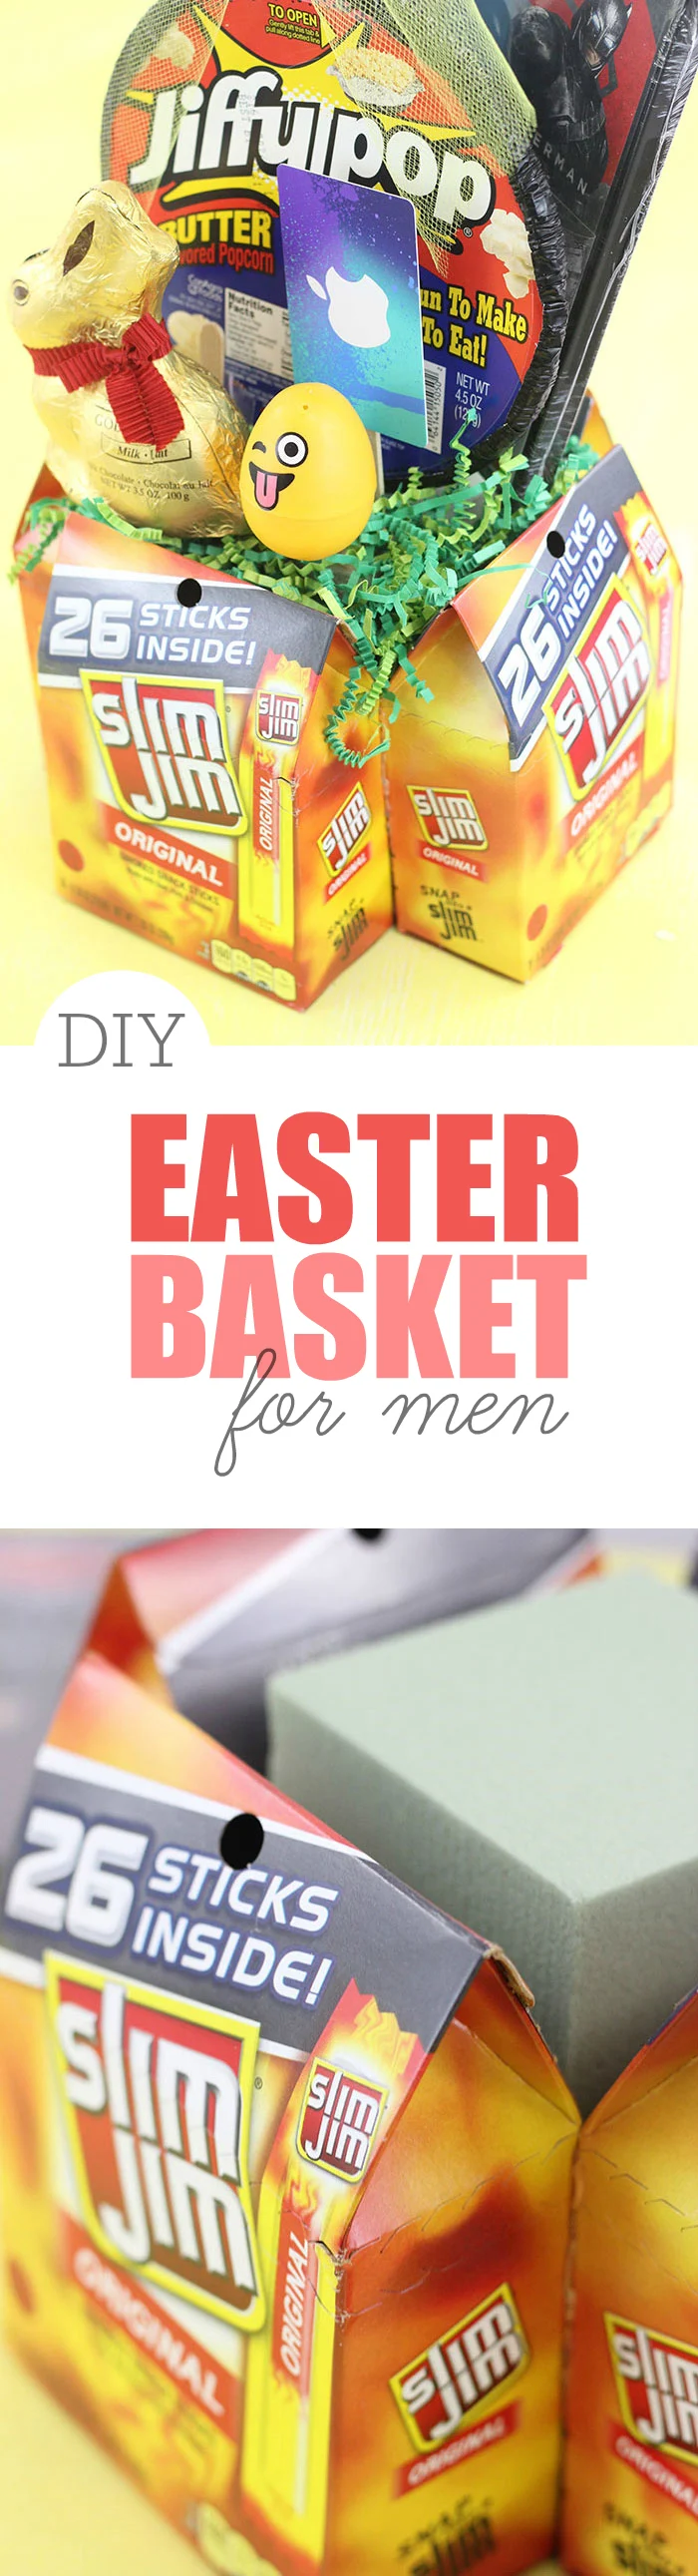 easter baskets for men